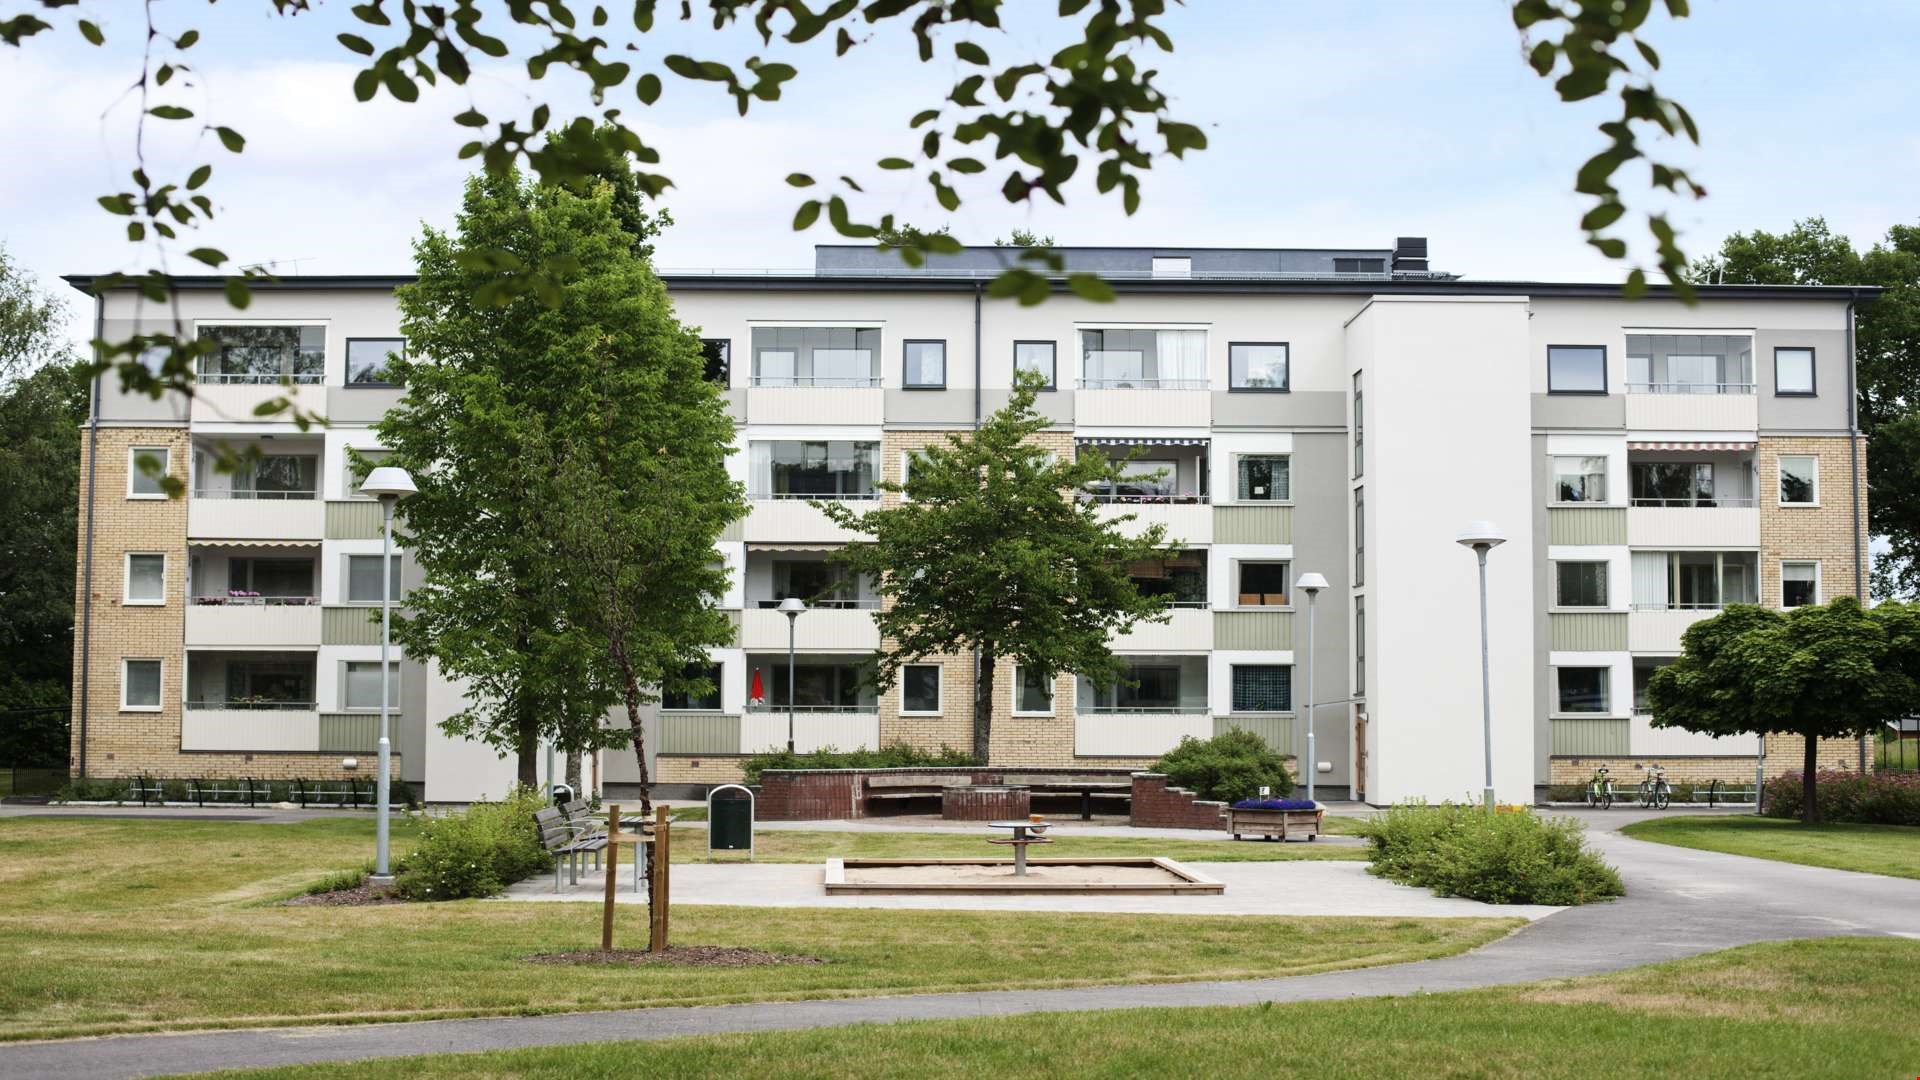 Ombyggnad gav miljöcertifiering till 60-tals hyresrätter i Skarpan, Linköping